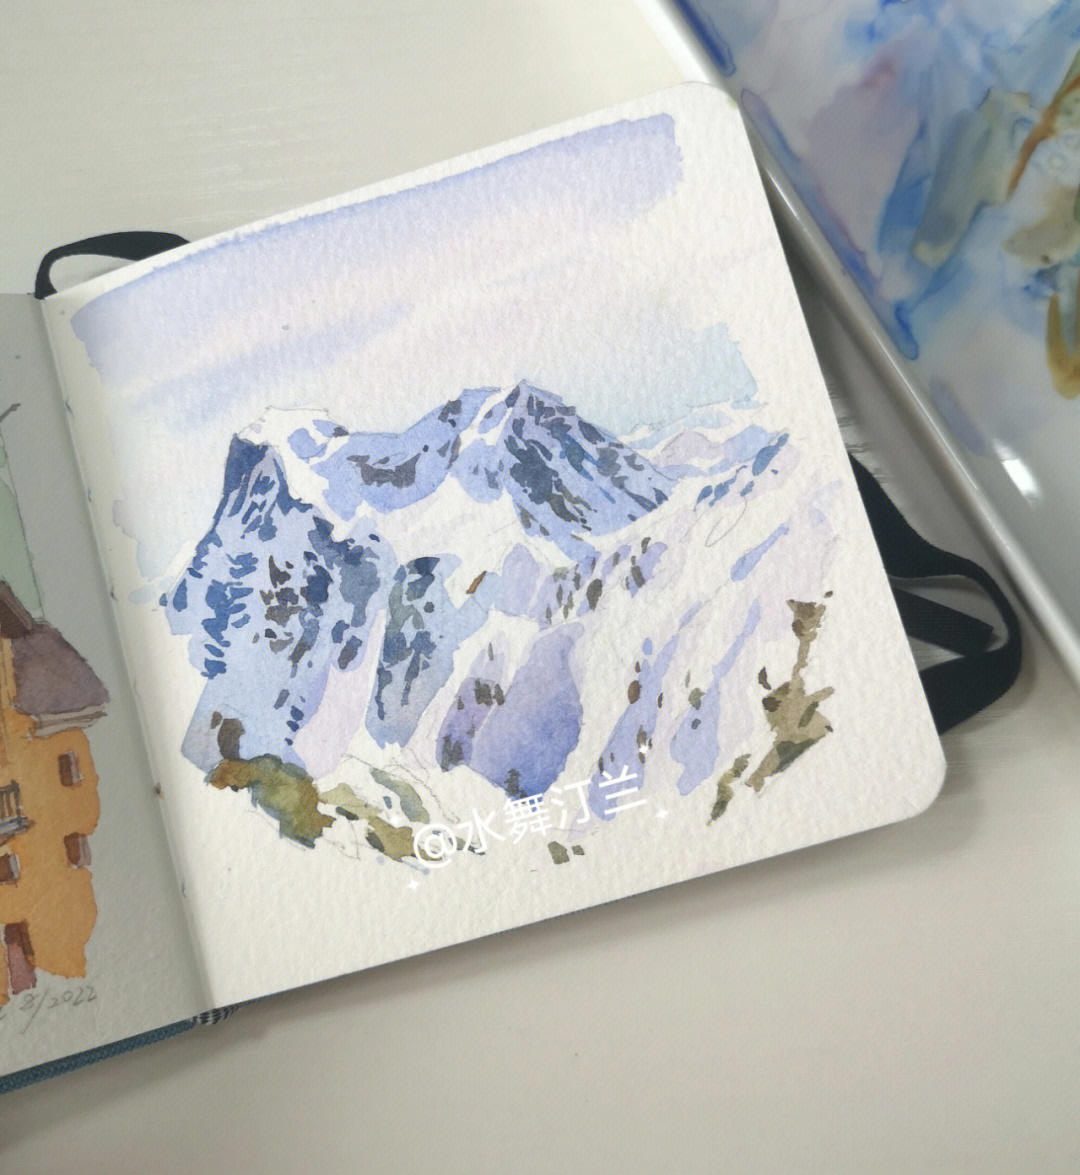 小本子上画不了太复杂的风景,画雪山正好